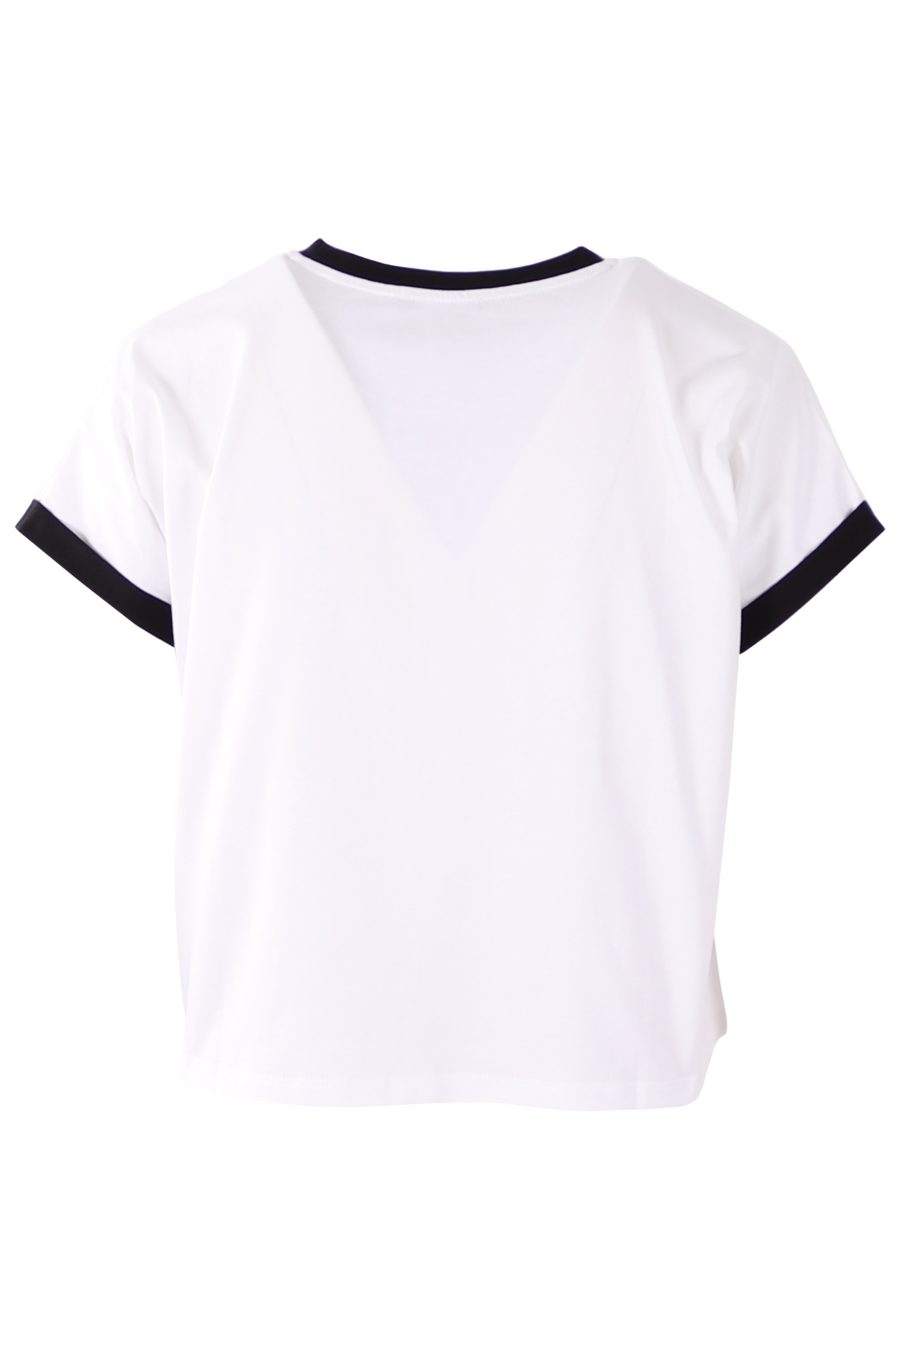 Balmain T-shirt branca com logótipo preto flocado - 236b191e17492d431c26d6287762905fe5ed4fc6